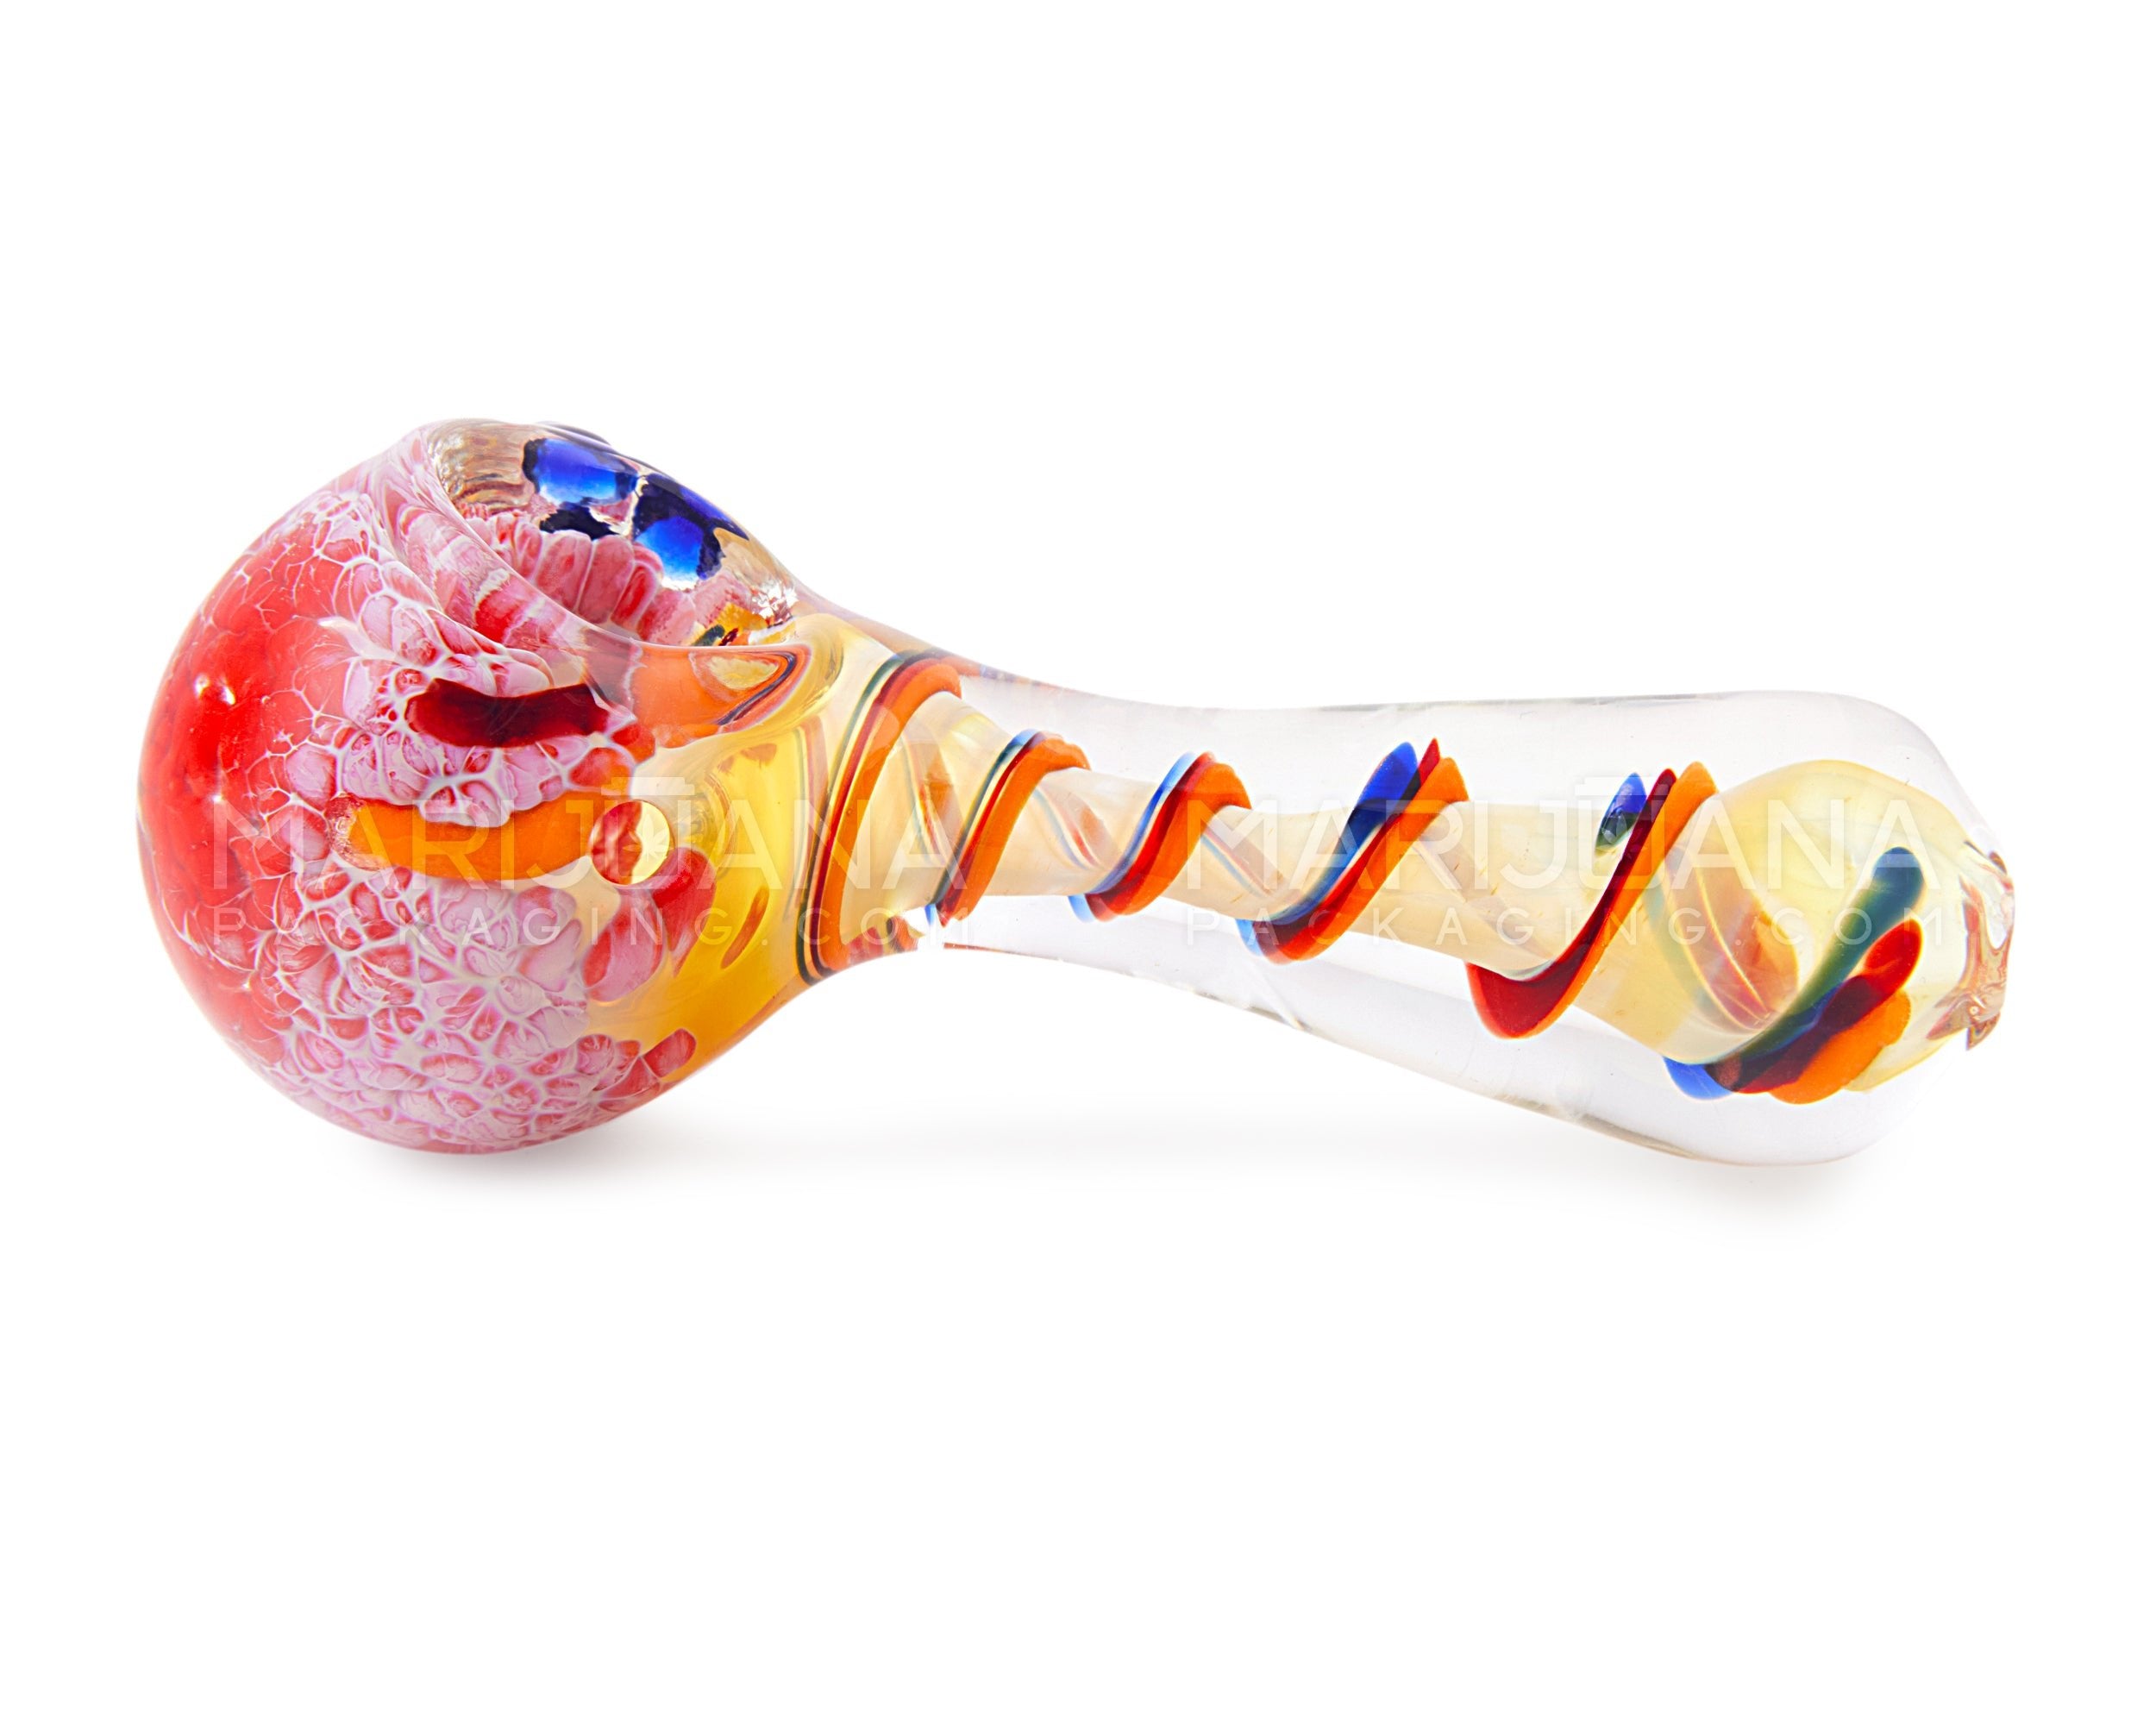 Frit & Fumed Swirl Spoon Hand Pipe w/ Triple Knockers | 4in Long - Glass - Assorted - 4